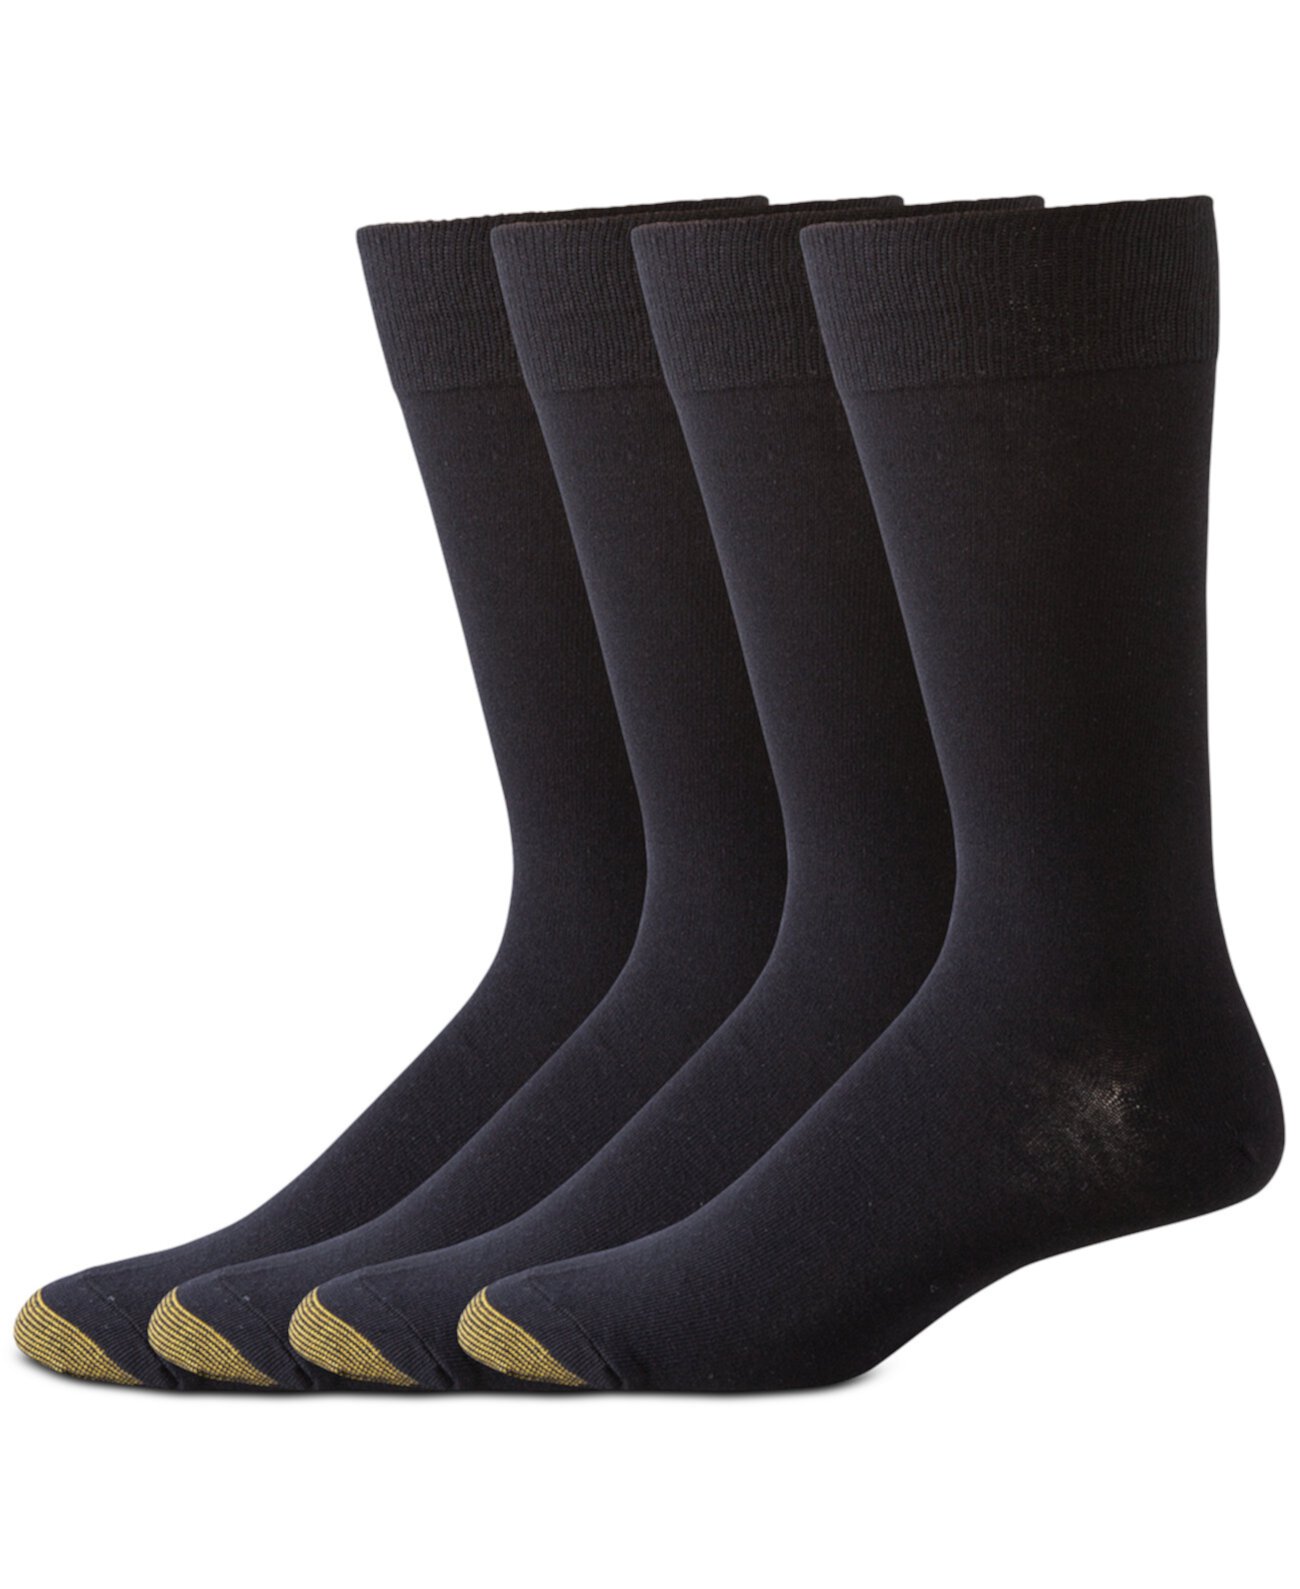 Мужские носки, трикотажные платья на плоской подошве, 4 пары, Created for Macy's Gold Toe